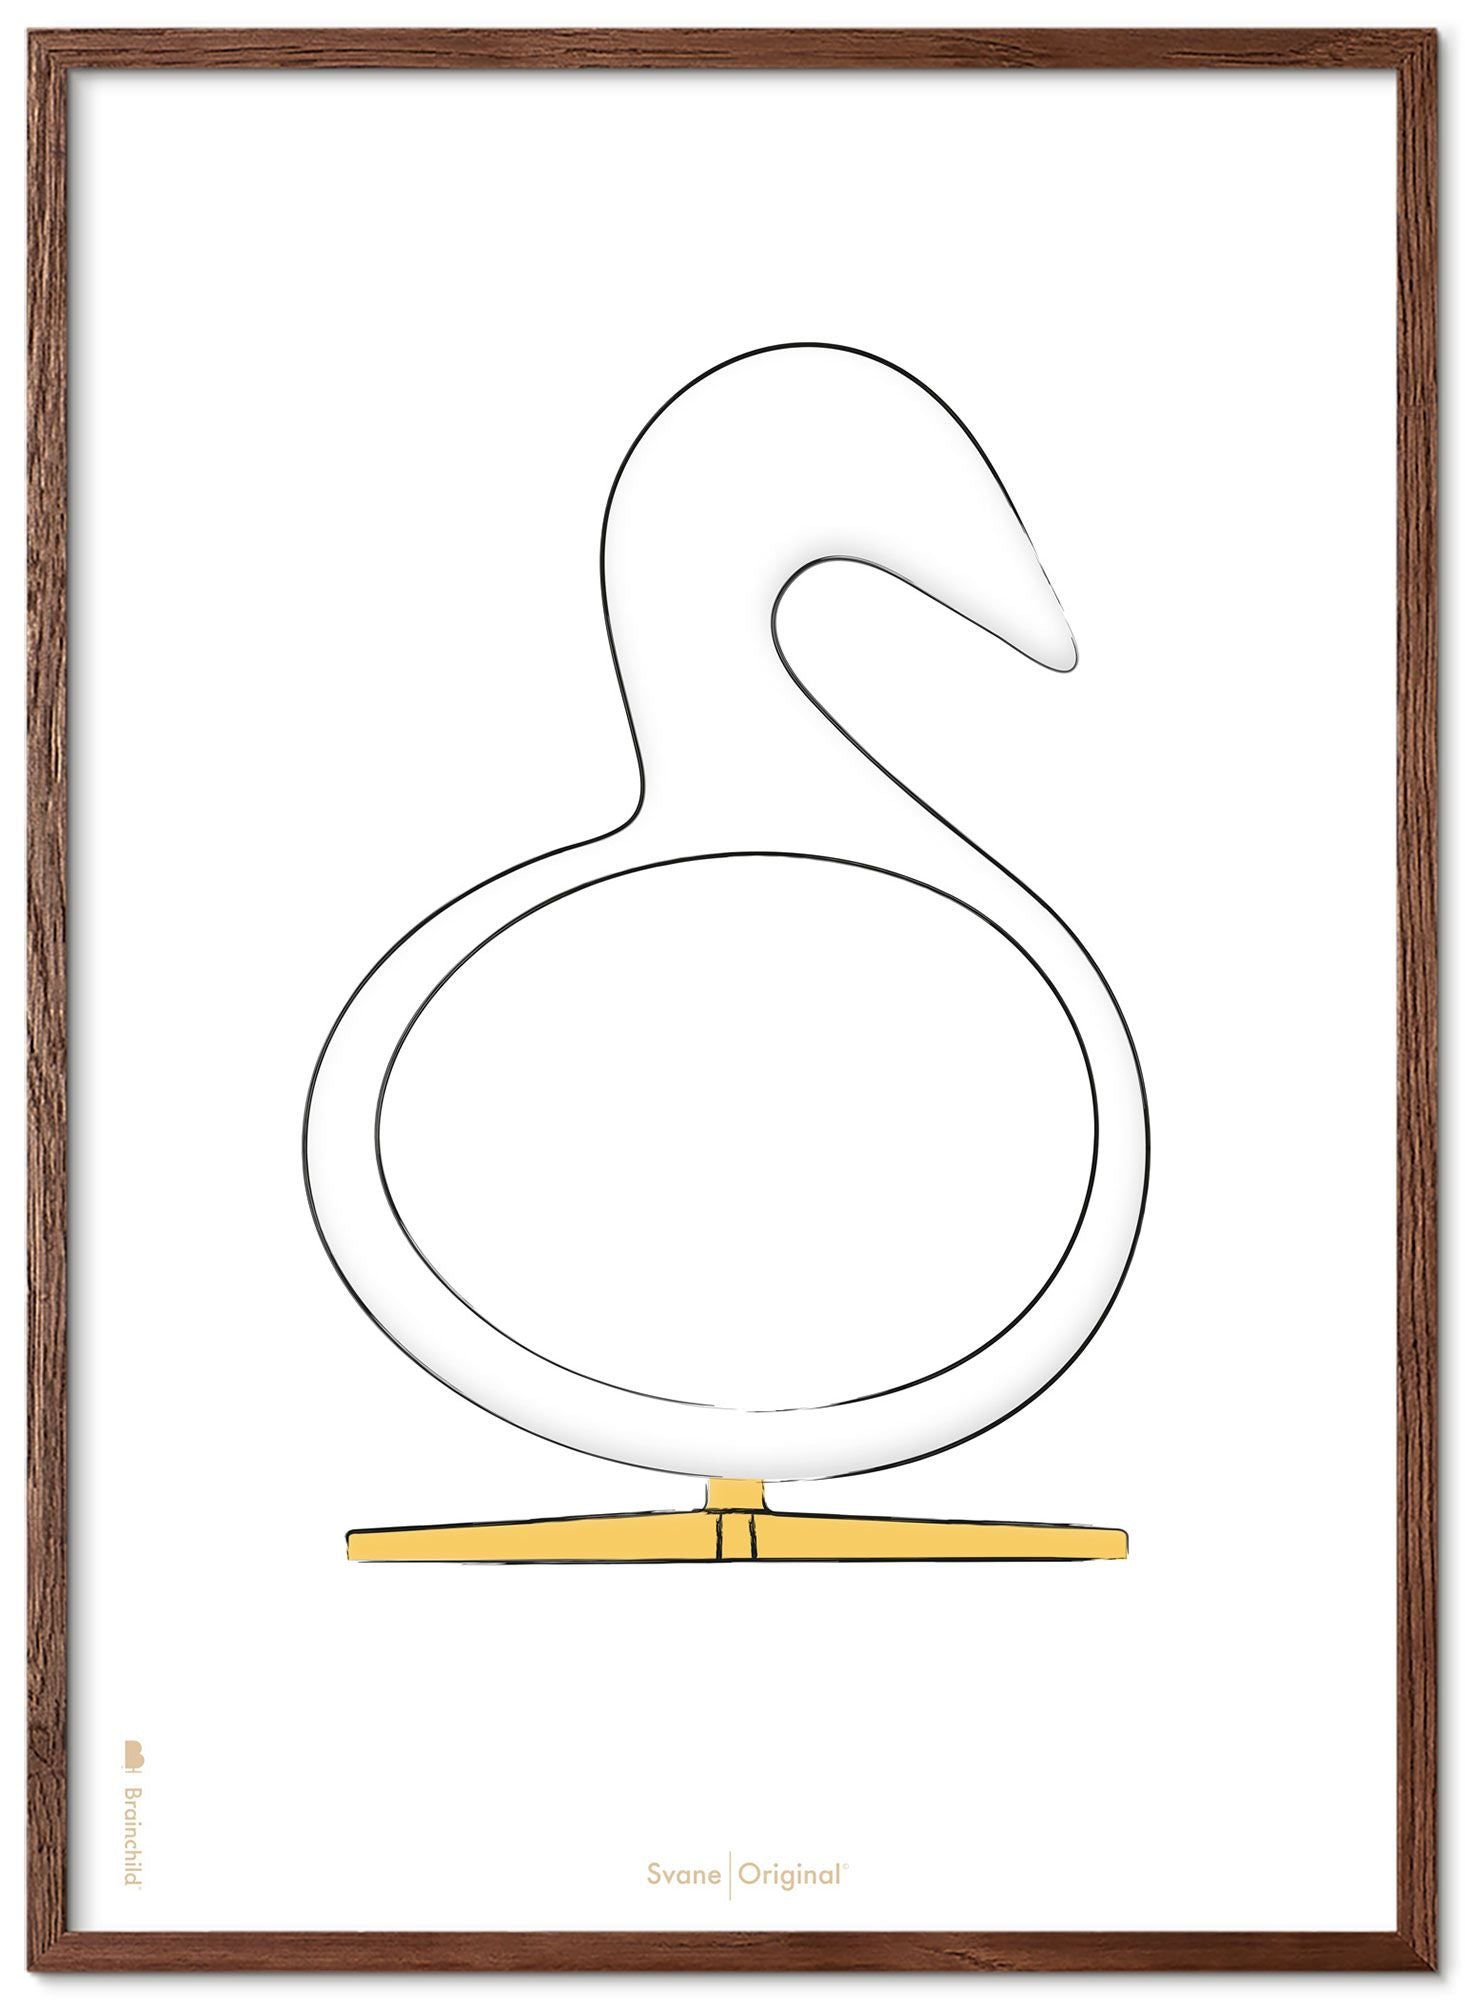 Marco de póster de boceto de diseño de Swan de creación hecha de madera oscura A5, fondo blanco